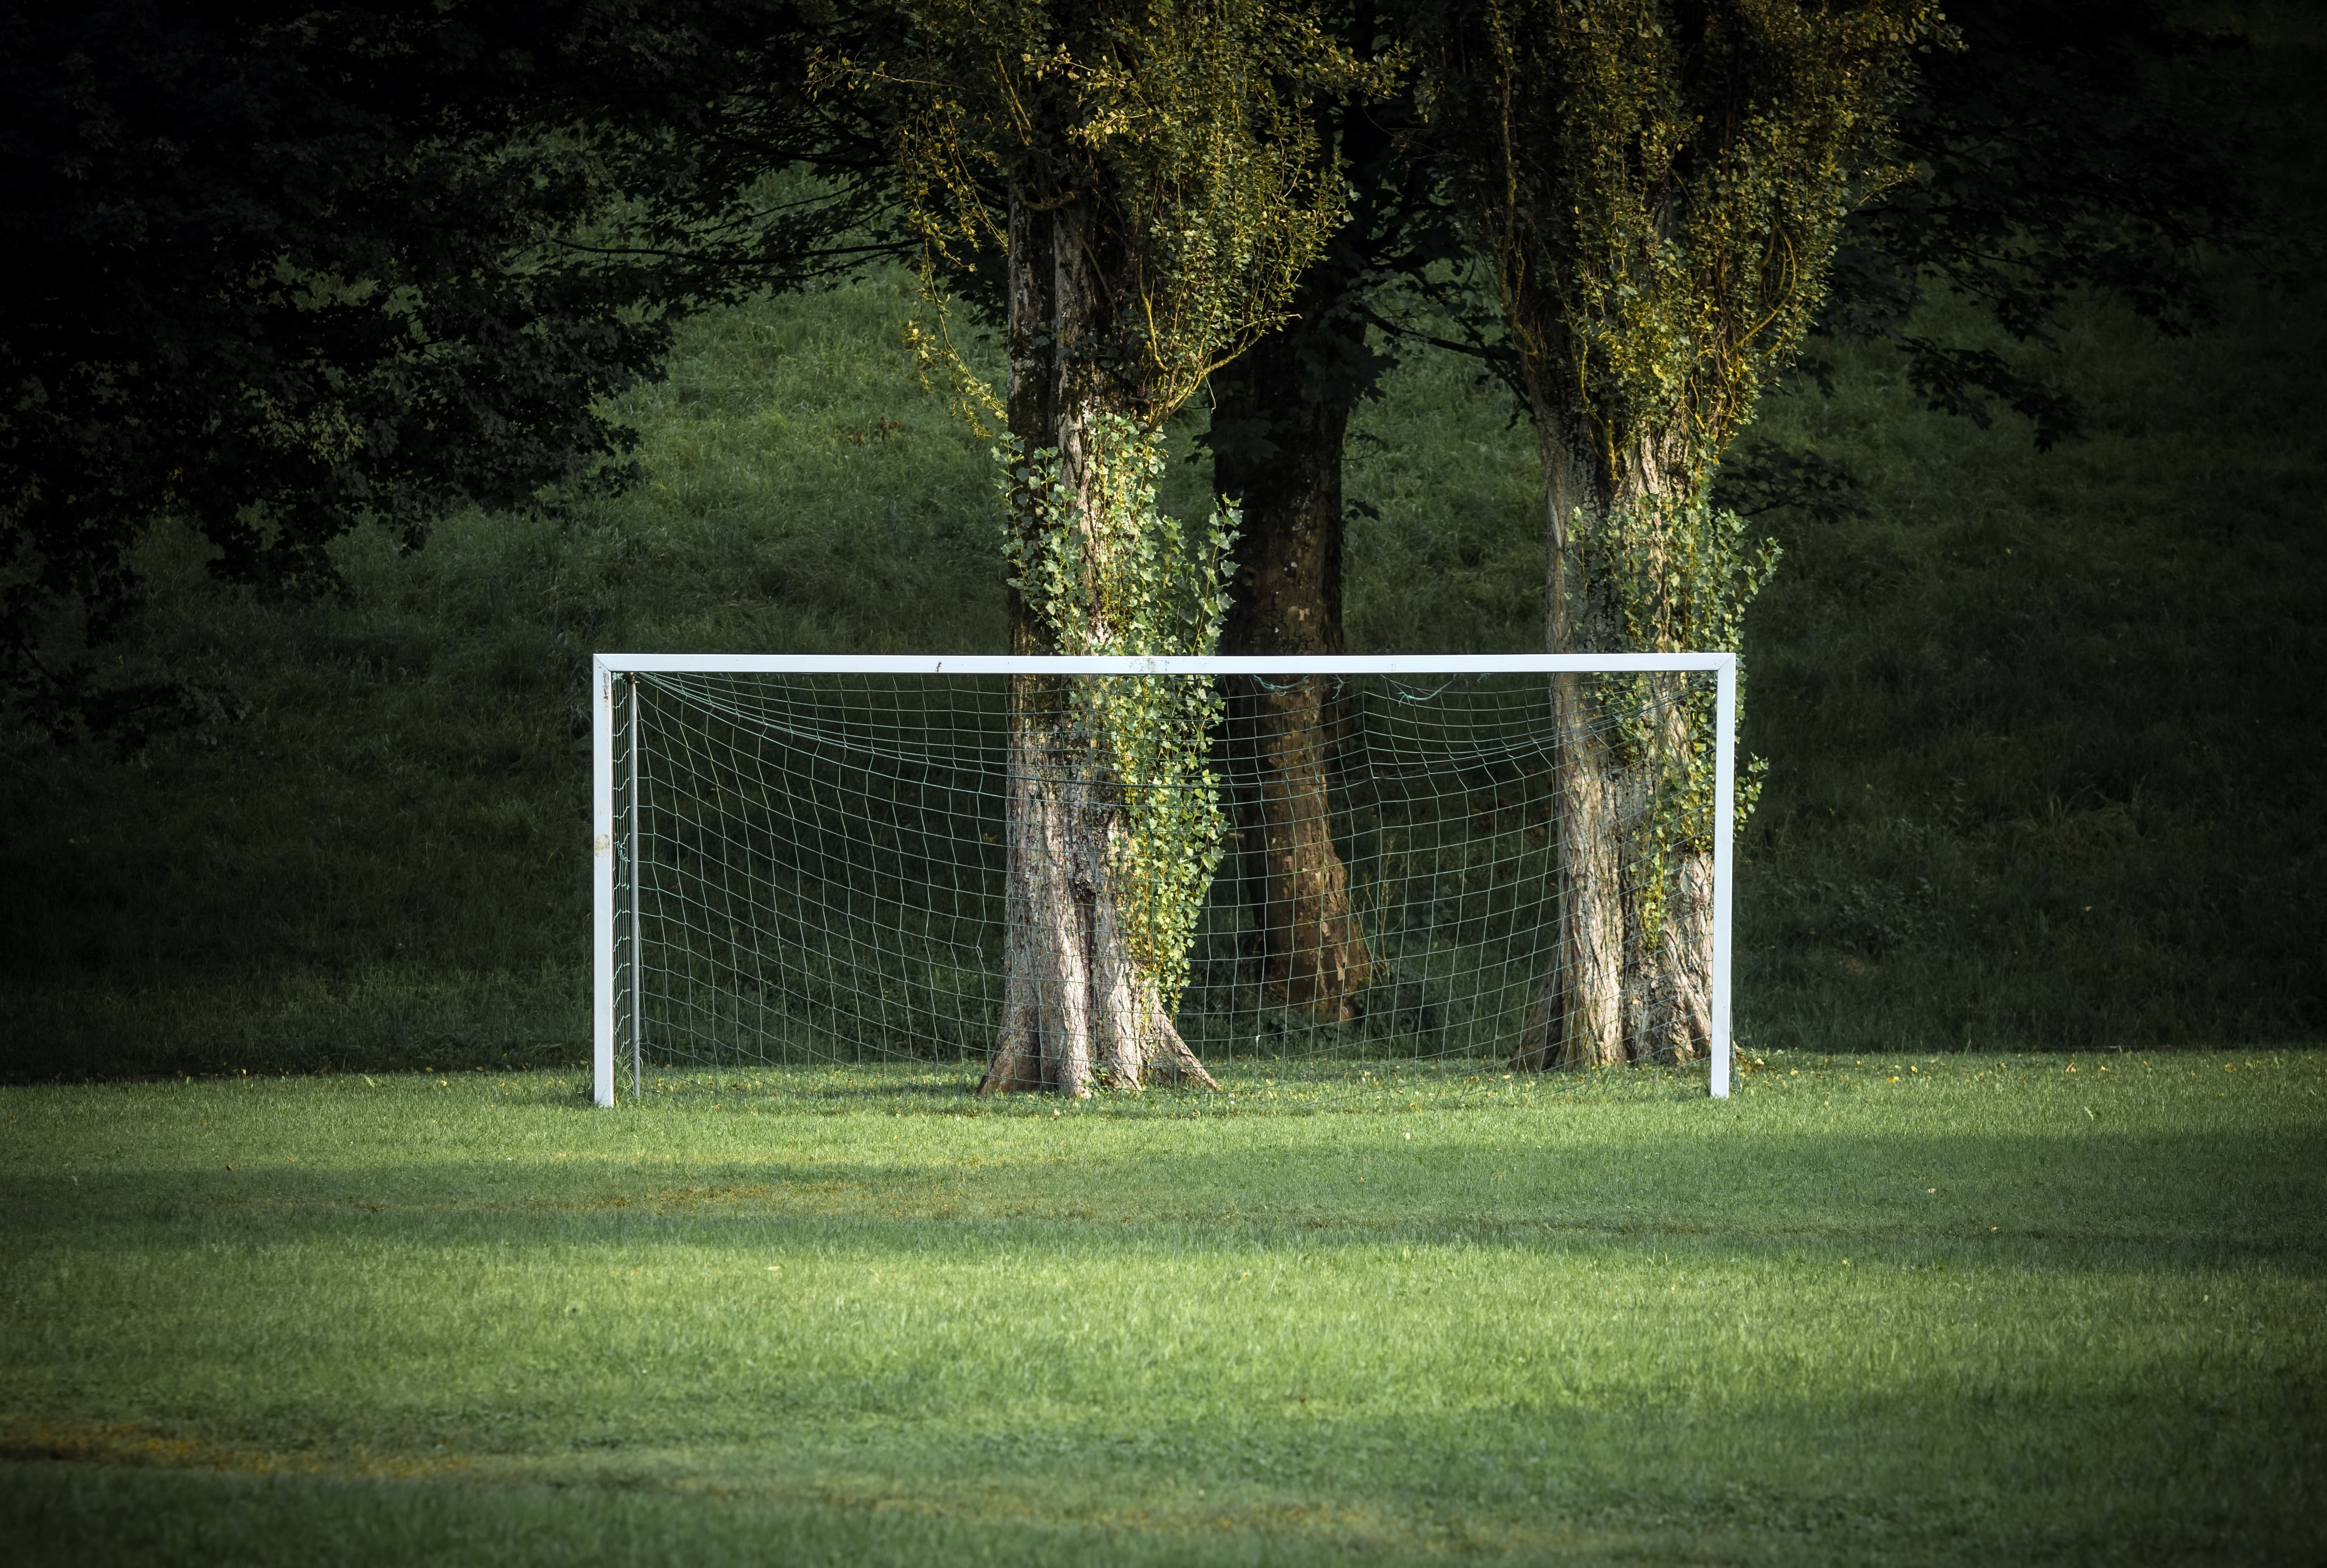 grass, Green, Trees, Sport, Soccer Field Wallpapers HD / Desktop and